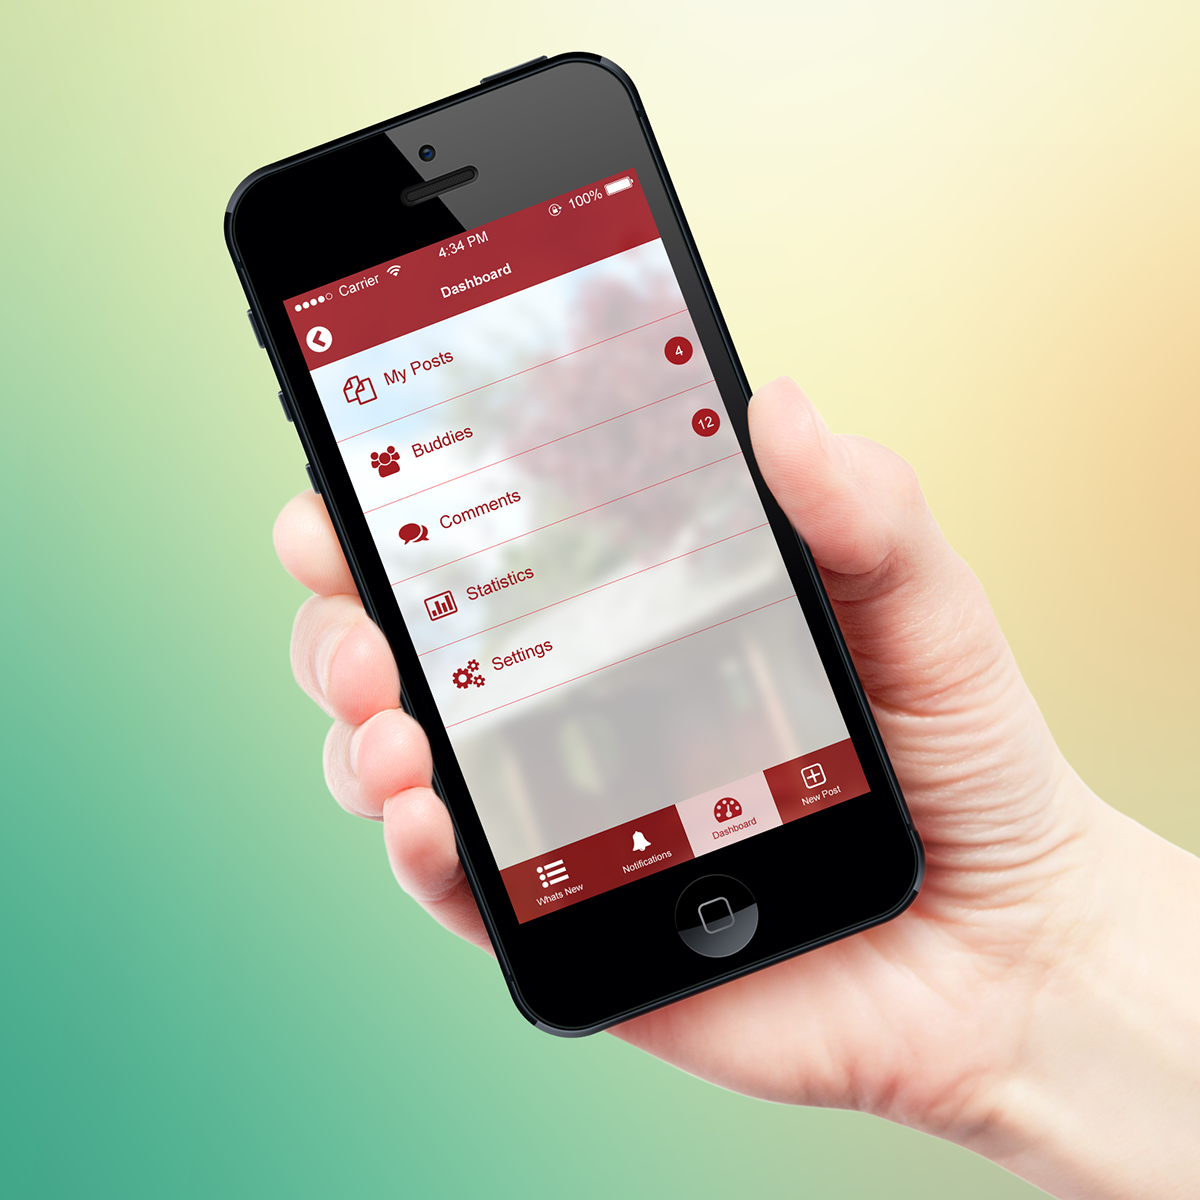 UI ux mobile iphone app design